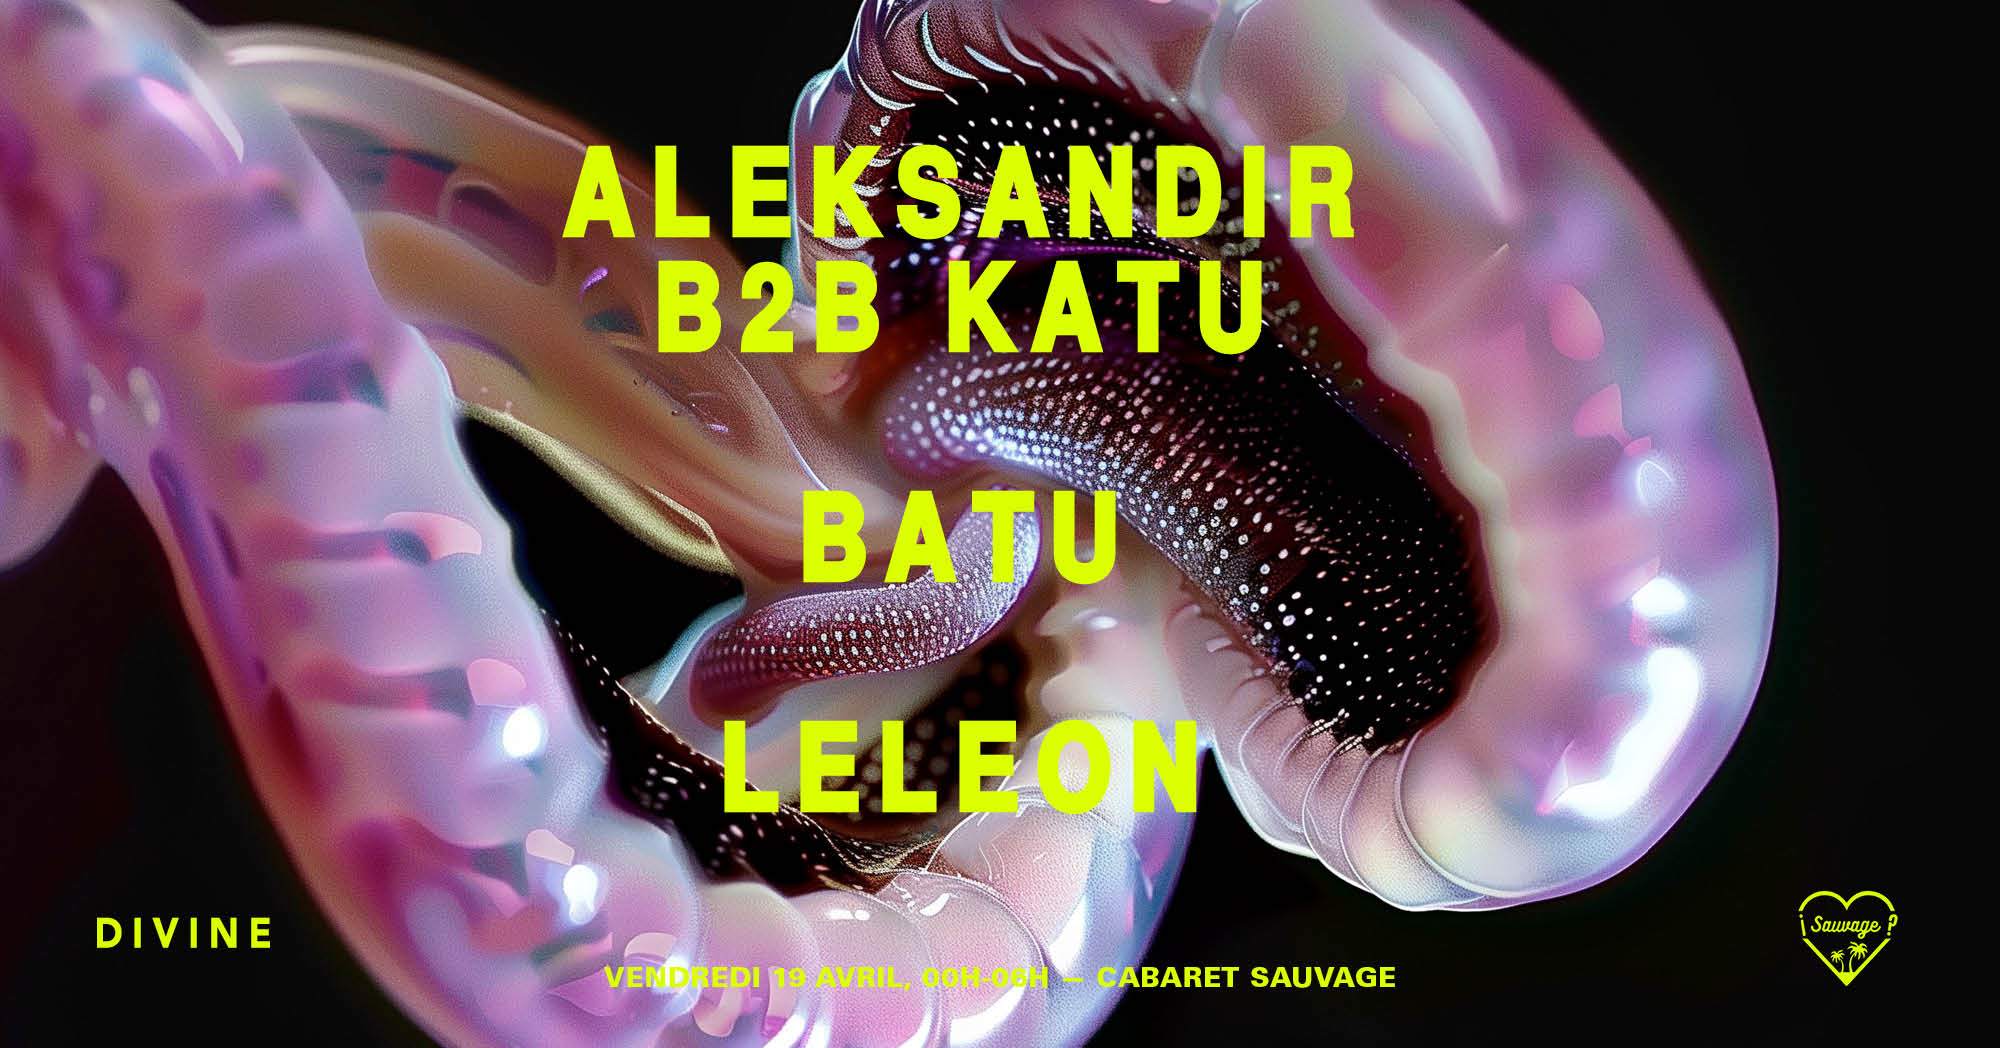 ¡DIVINE Sauvage: Aleksandir / Batu / Katu / LeLeon - フライヤー表